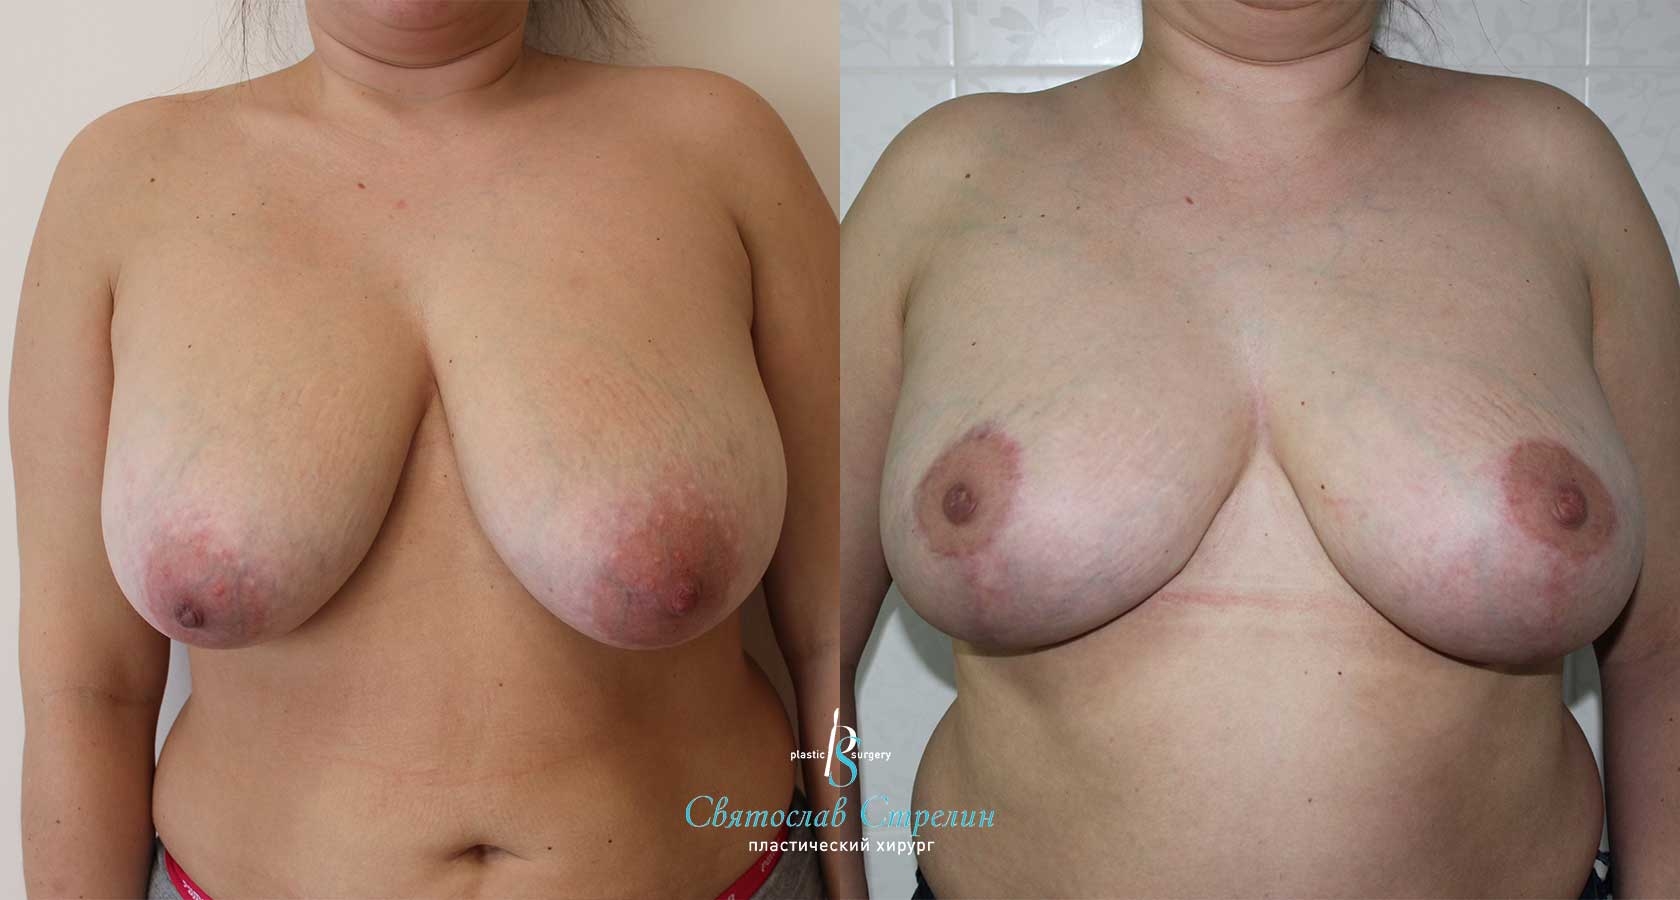 Подтяжка груди, 4 месяца после операции